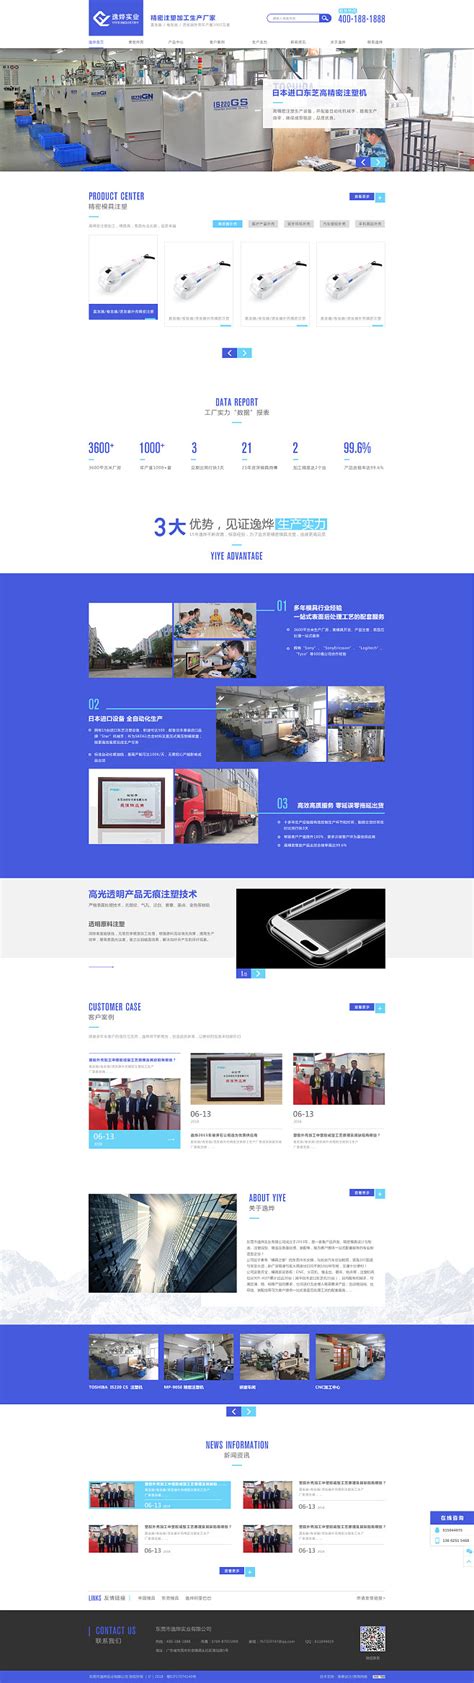 企业站 模具网站 蓝色网站 营销型网站 品牌站